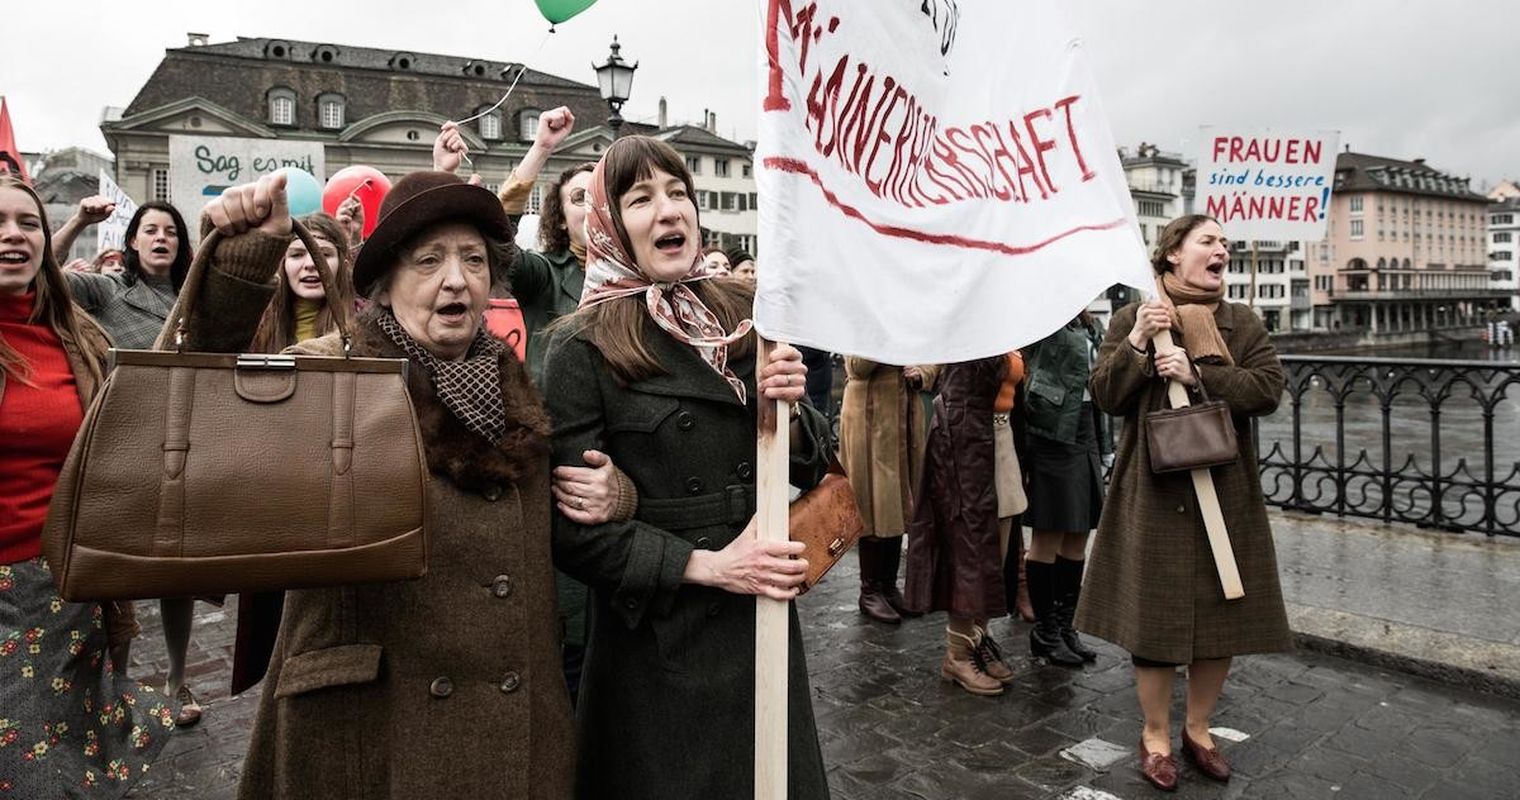 Frauenstimmrecht: Wie war das noch einmal im konservativen Luzern?